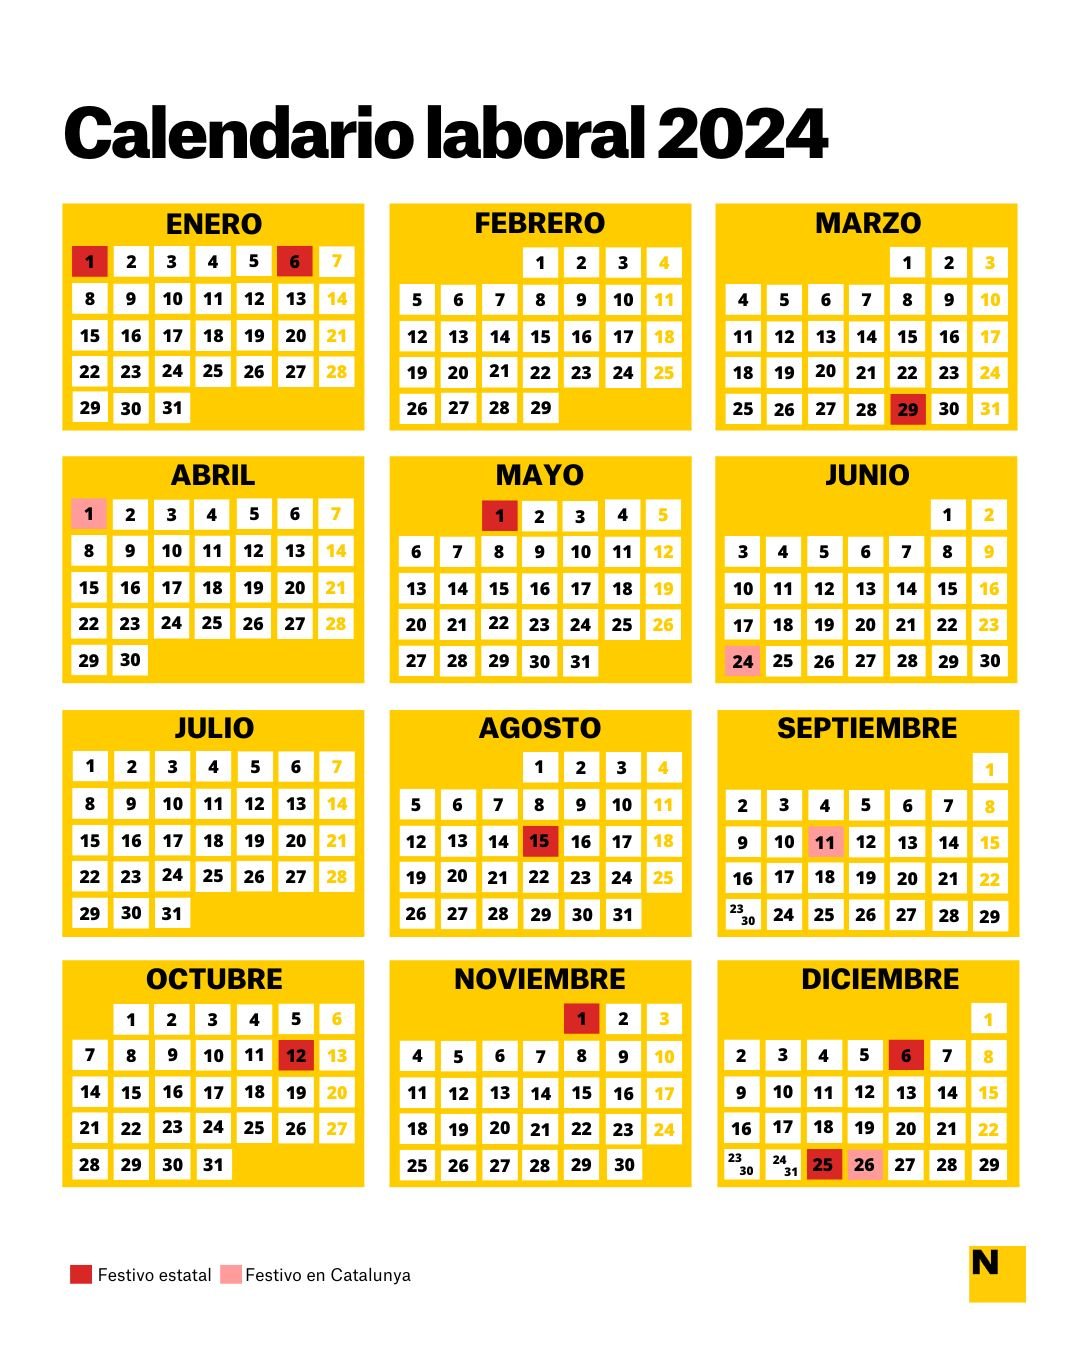 Feste 2024 Calendario Laboral Aubine Gavrielle